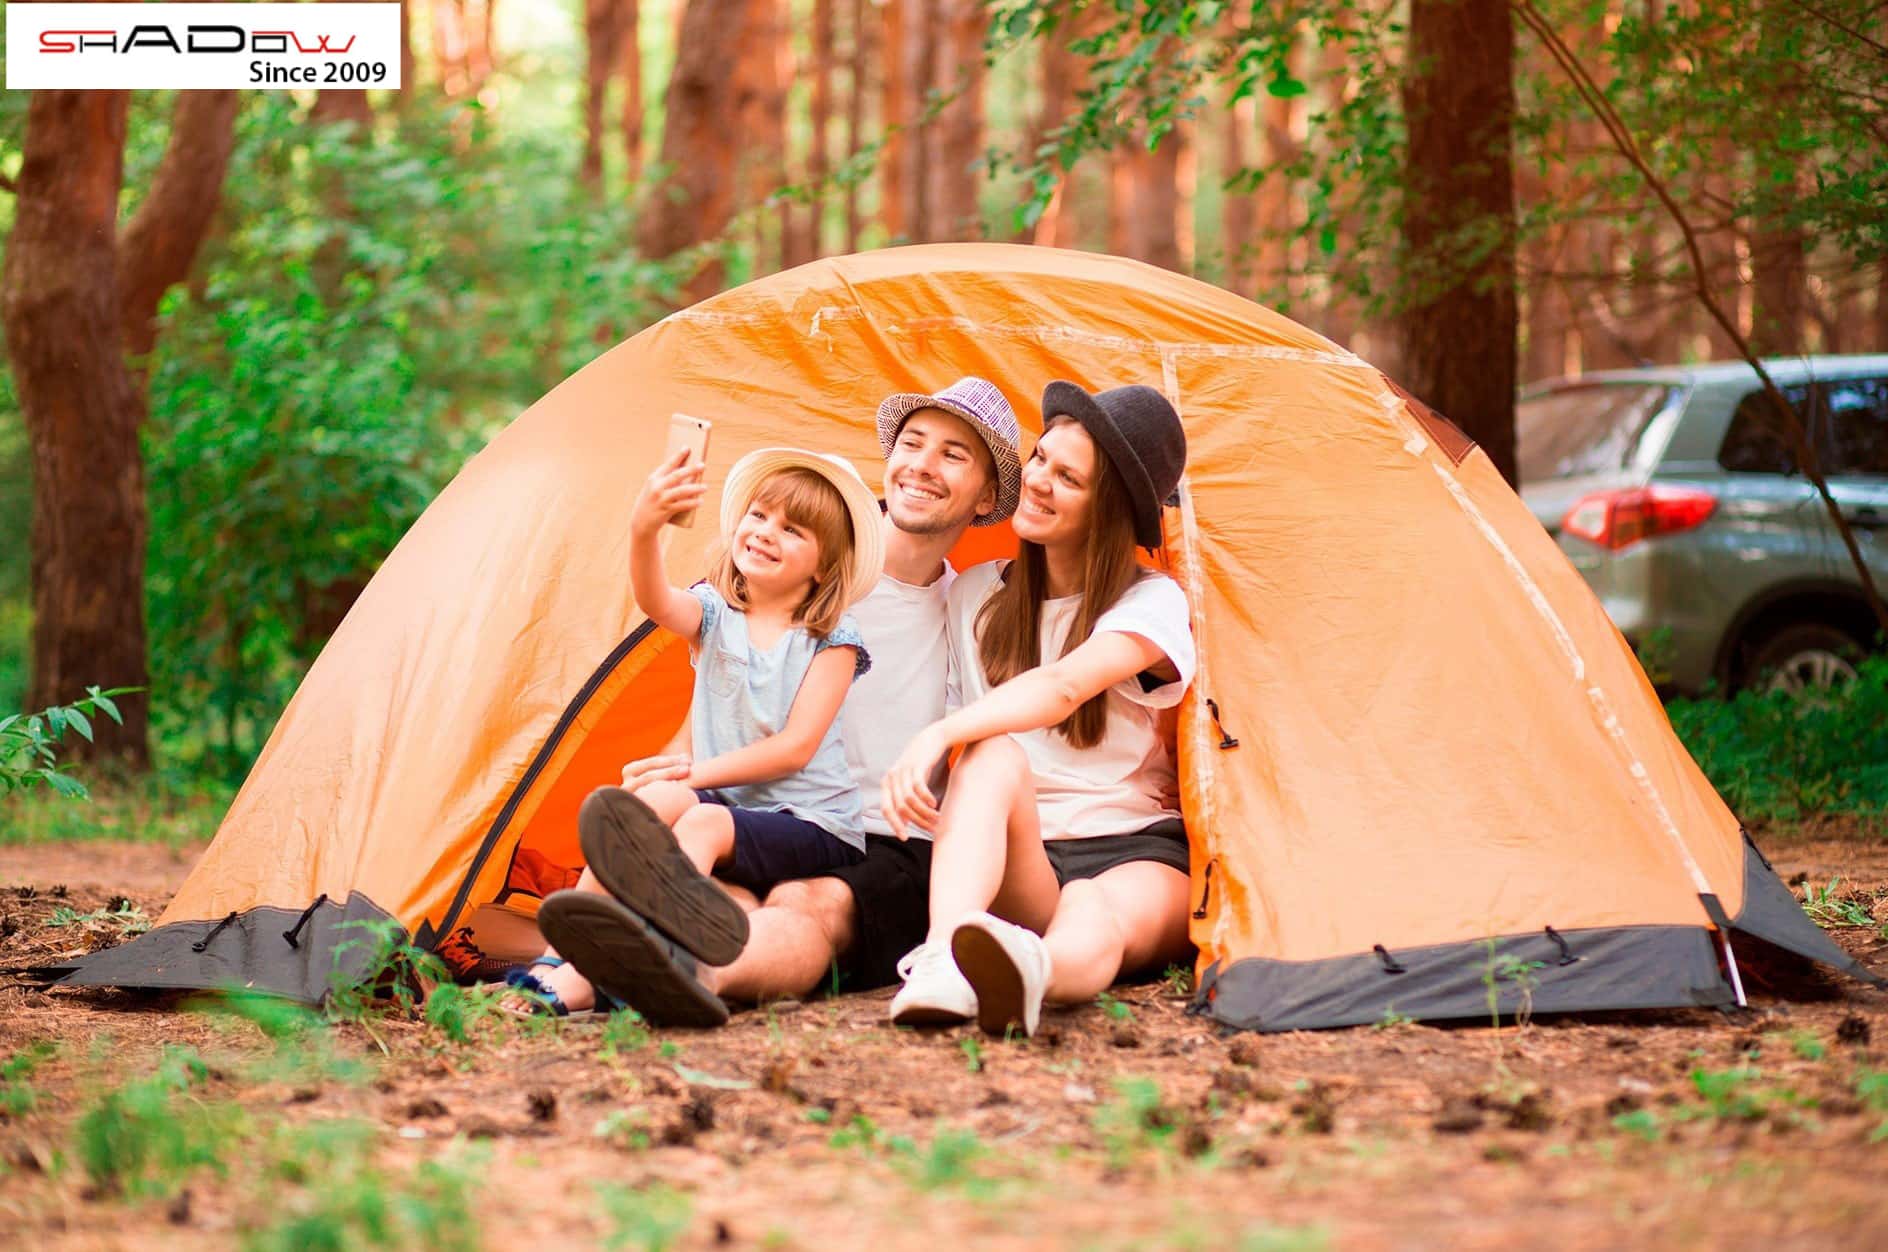 Đi cắm trại là một hoạt động đầy thú vị và bổ ích cho cả gia đình và bạn bè. Hãy xem hình ảnh về chuyến cắm trại để cùng nhau khám phá những địa điểm đẹp và trải nghiệm cuộc sống thiên nhiên nhé!